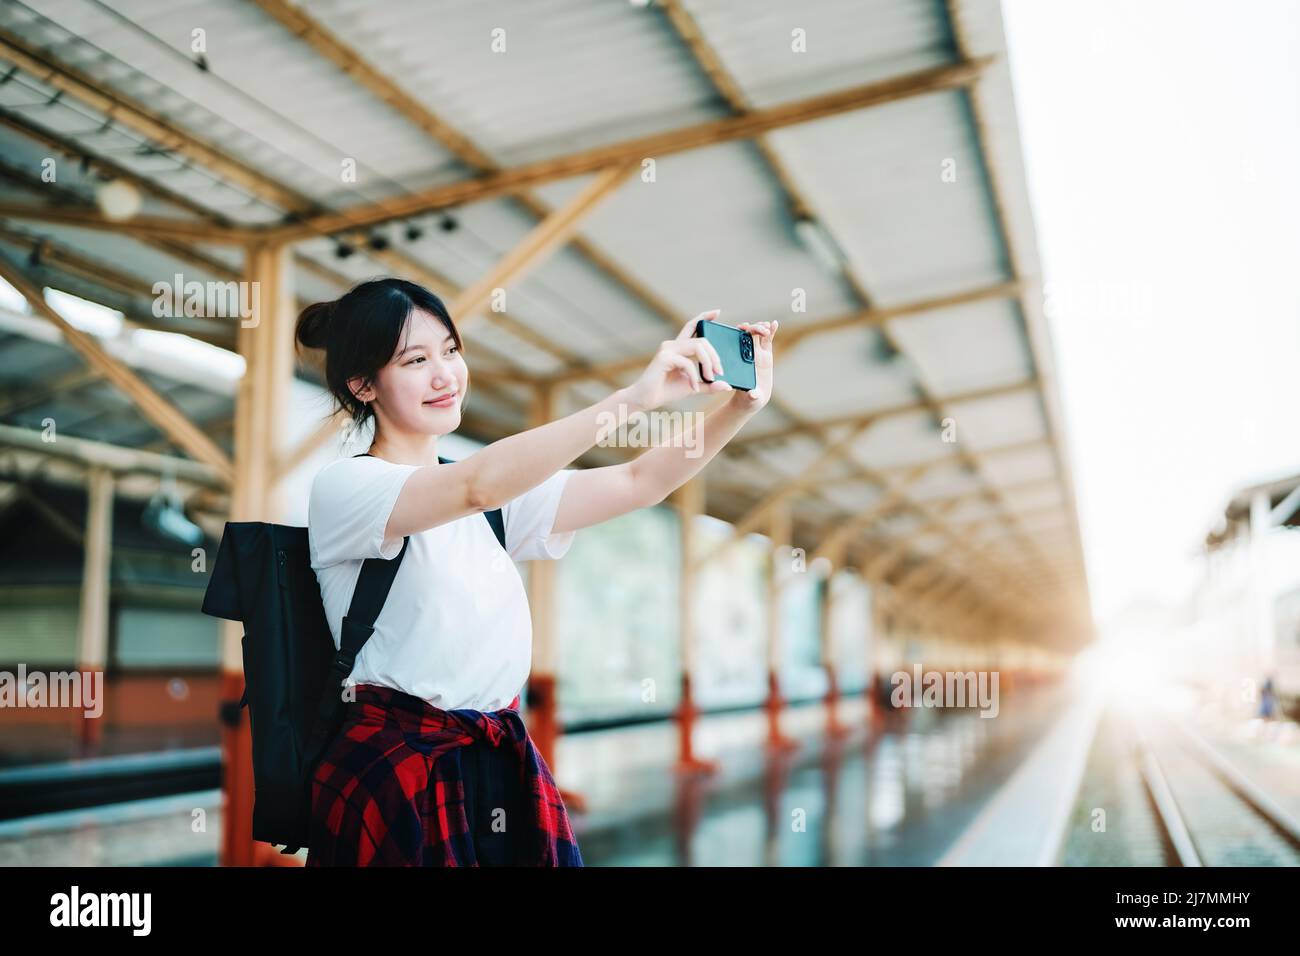 Estate, relax, vacanza, viaggio, ritratto di bella ragazza asiatica utilizzando lo smartphone mobile prendere una foto selfie faccia te alla stazione ferroviaria Foto Stock